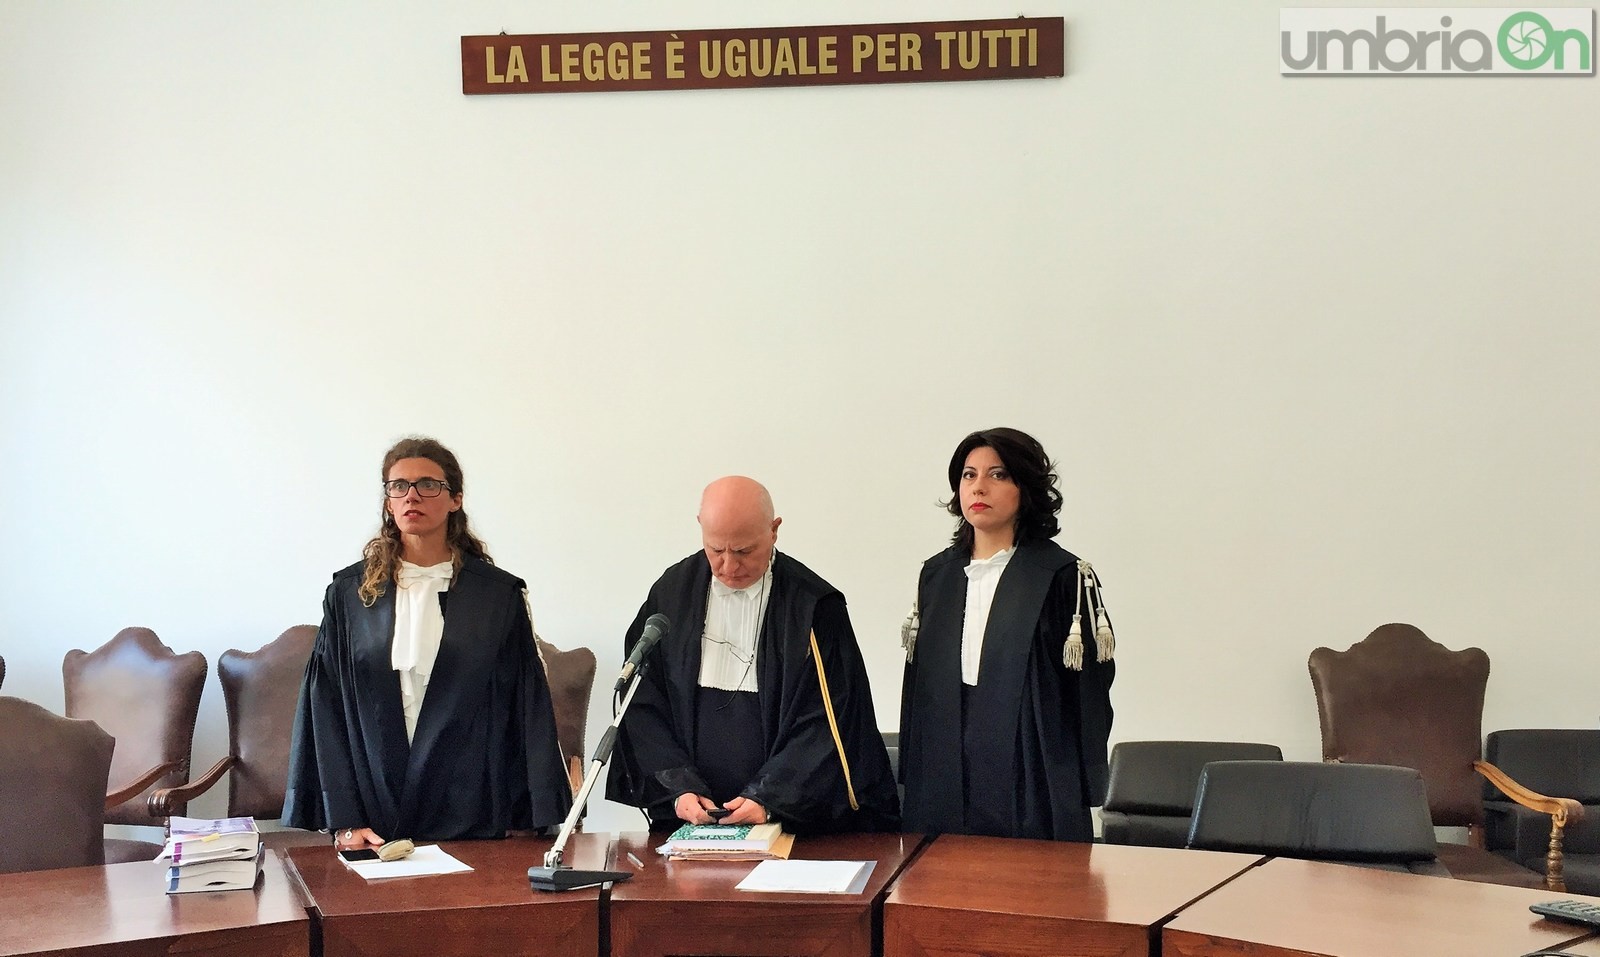 Insediamento nuovo procuratore Terni, Alberto Liguori, giuramento tribunale - 12 aprile 2016 (6)